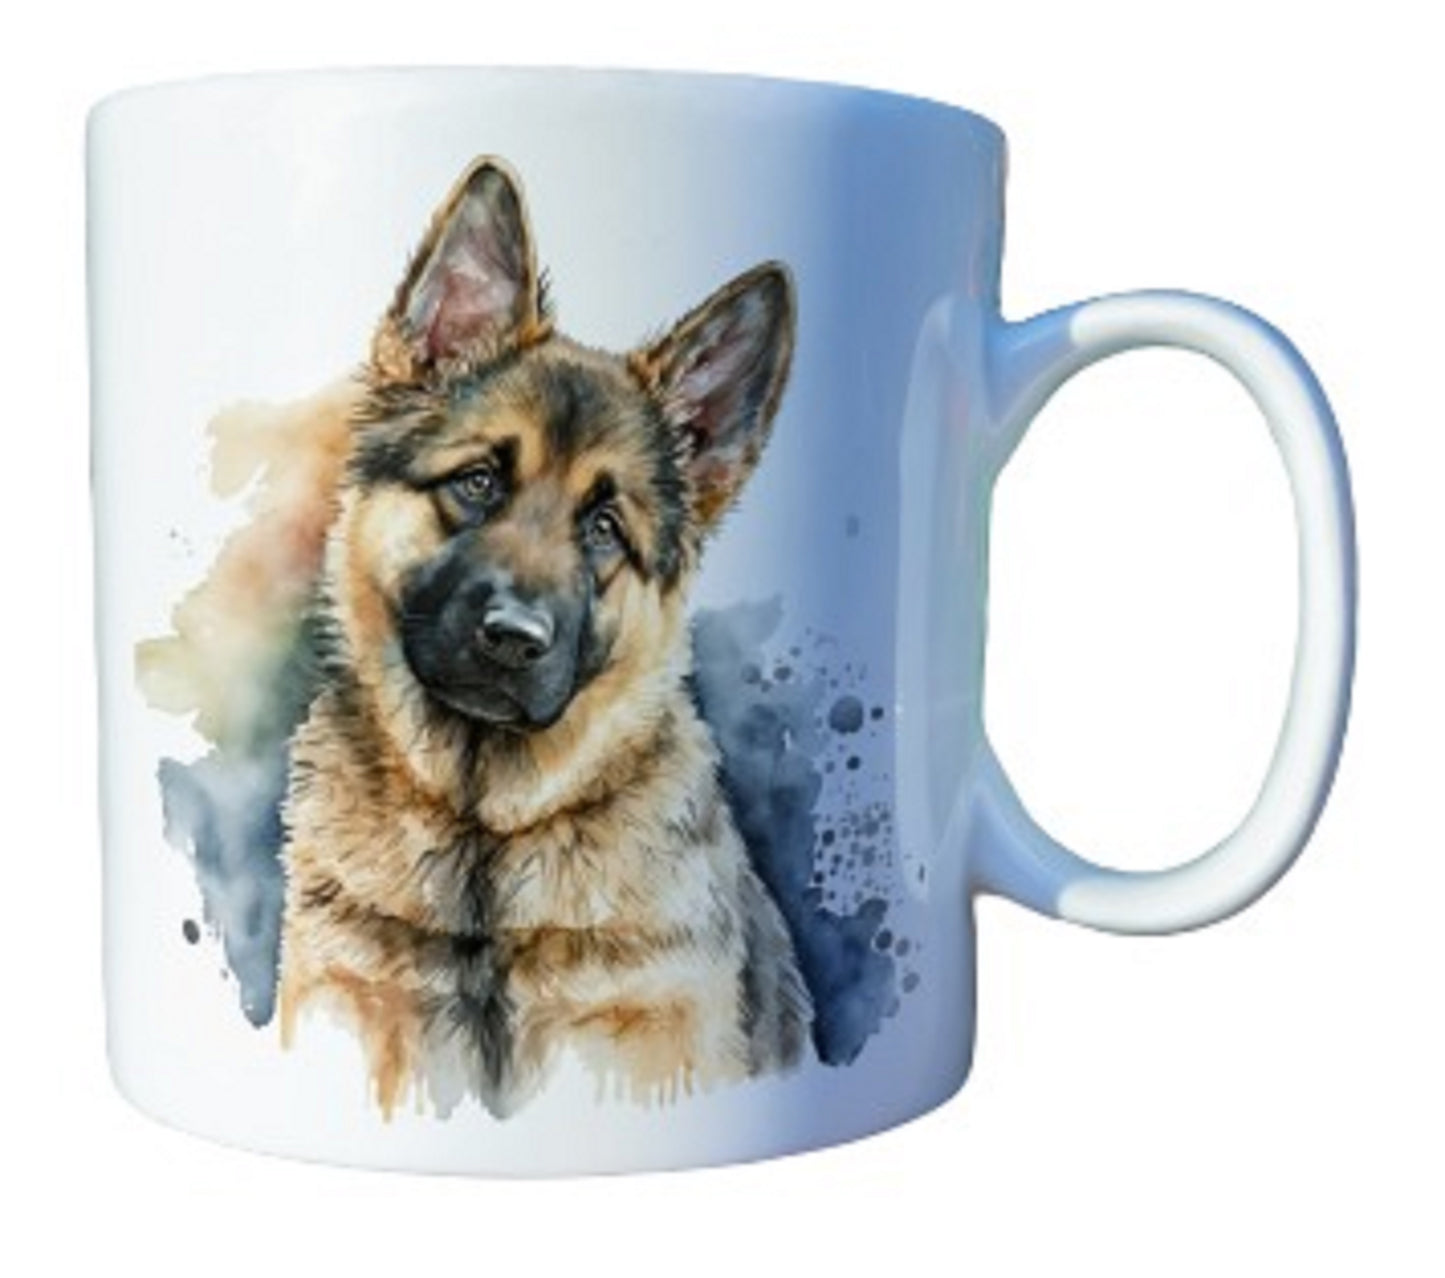  Beautiful Personalised German Shepherd Coffee Mugs - Choice of Designs by Free Spirit Accessories sold by Free Spirit Accessories